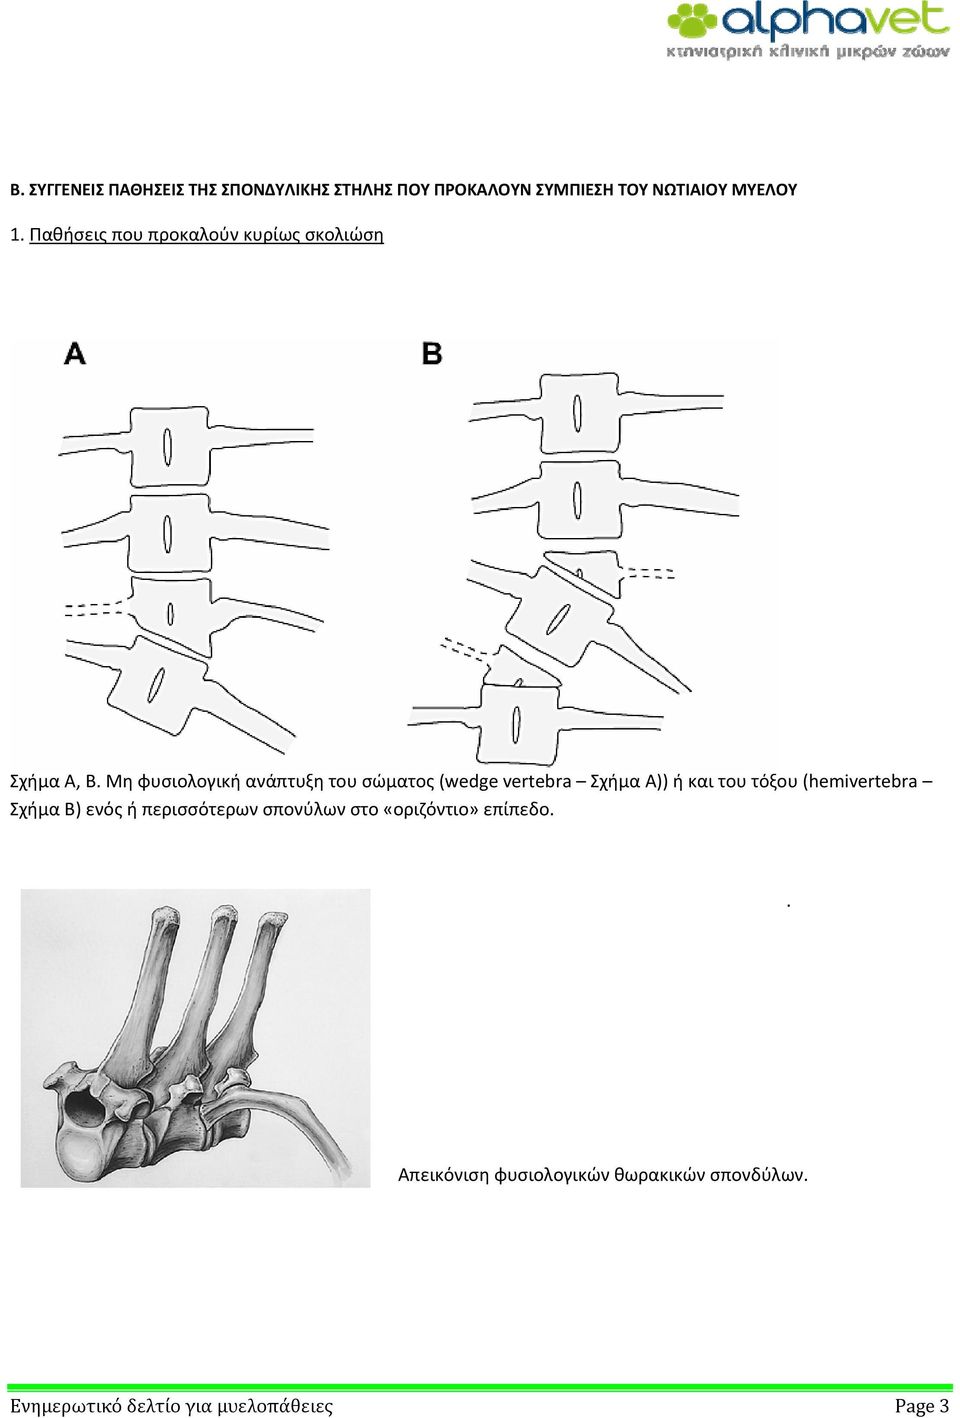 Μη φυσιολογική ανάπτυξη του σώματος (wedge vertebra Σχήμα Α)) ή και του τόξου (hemivertebra